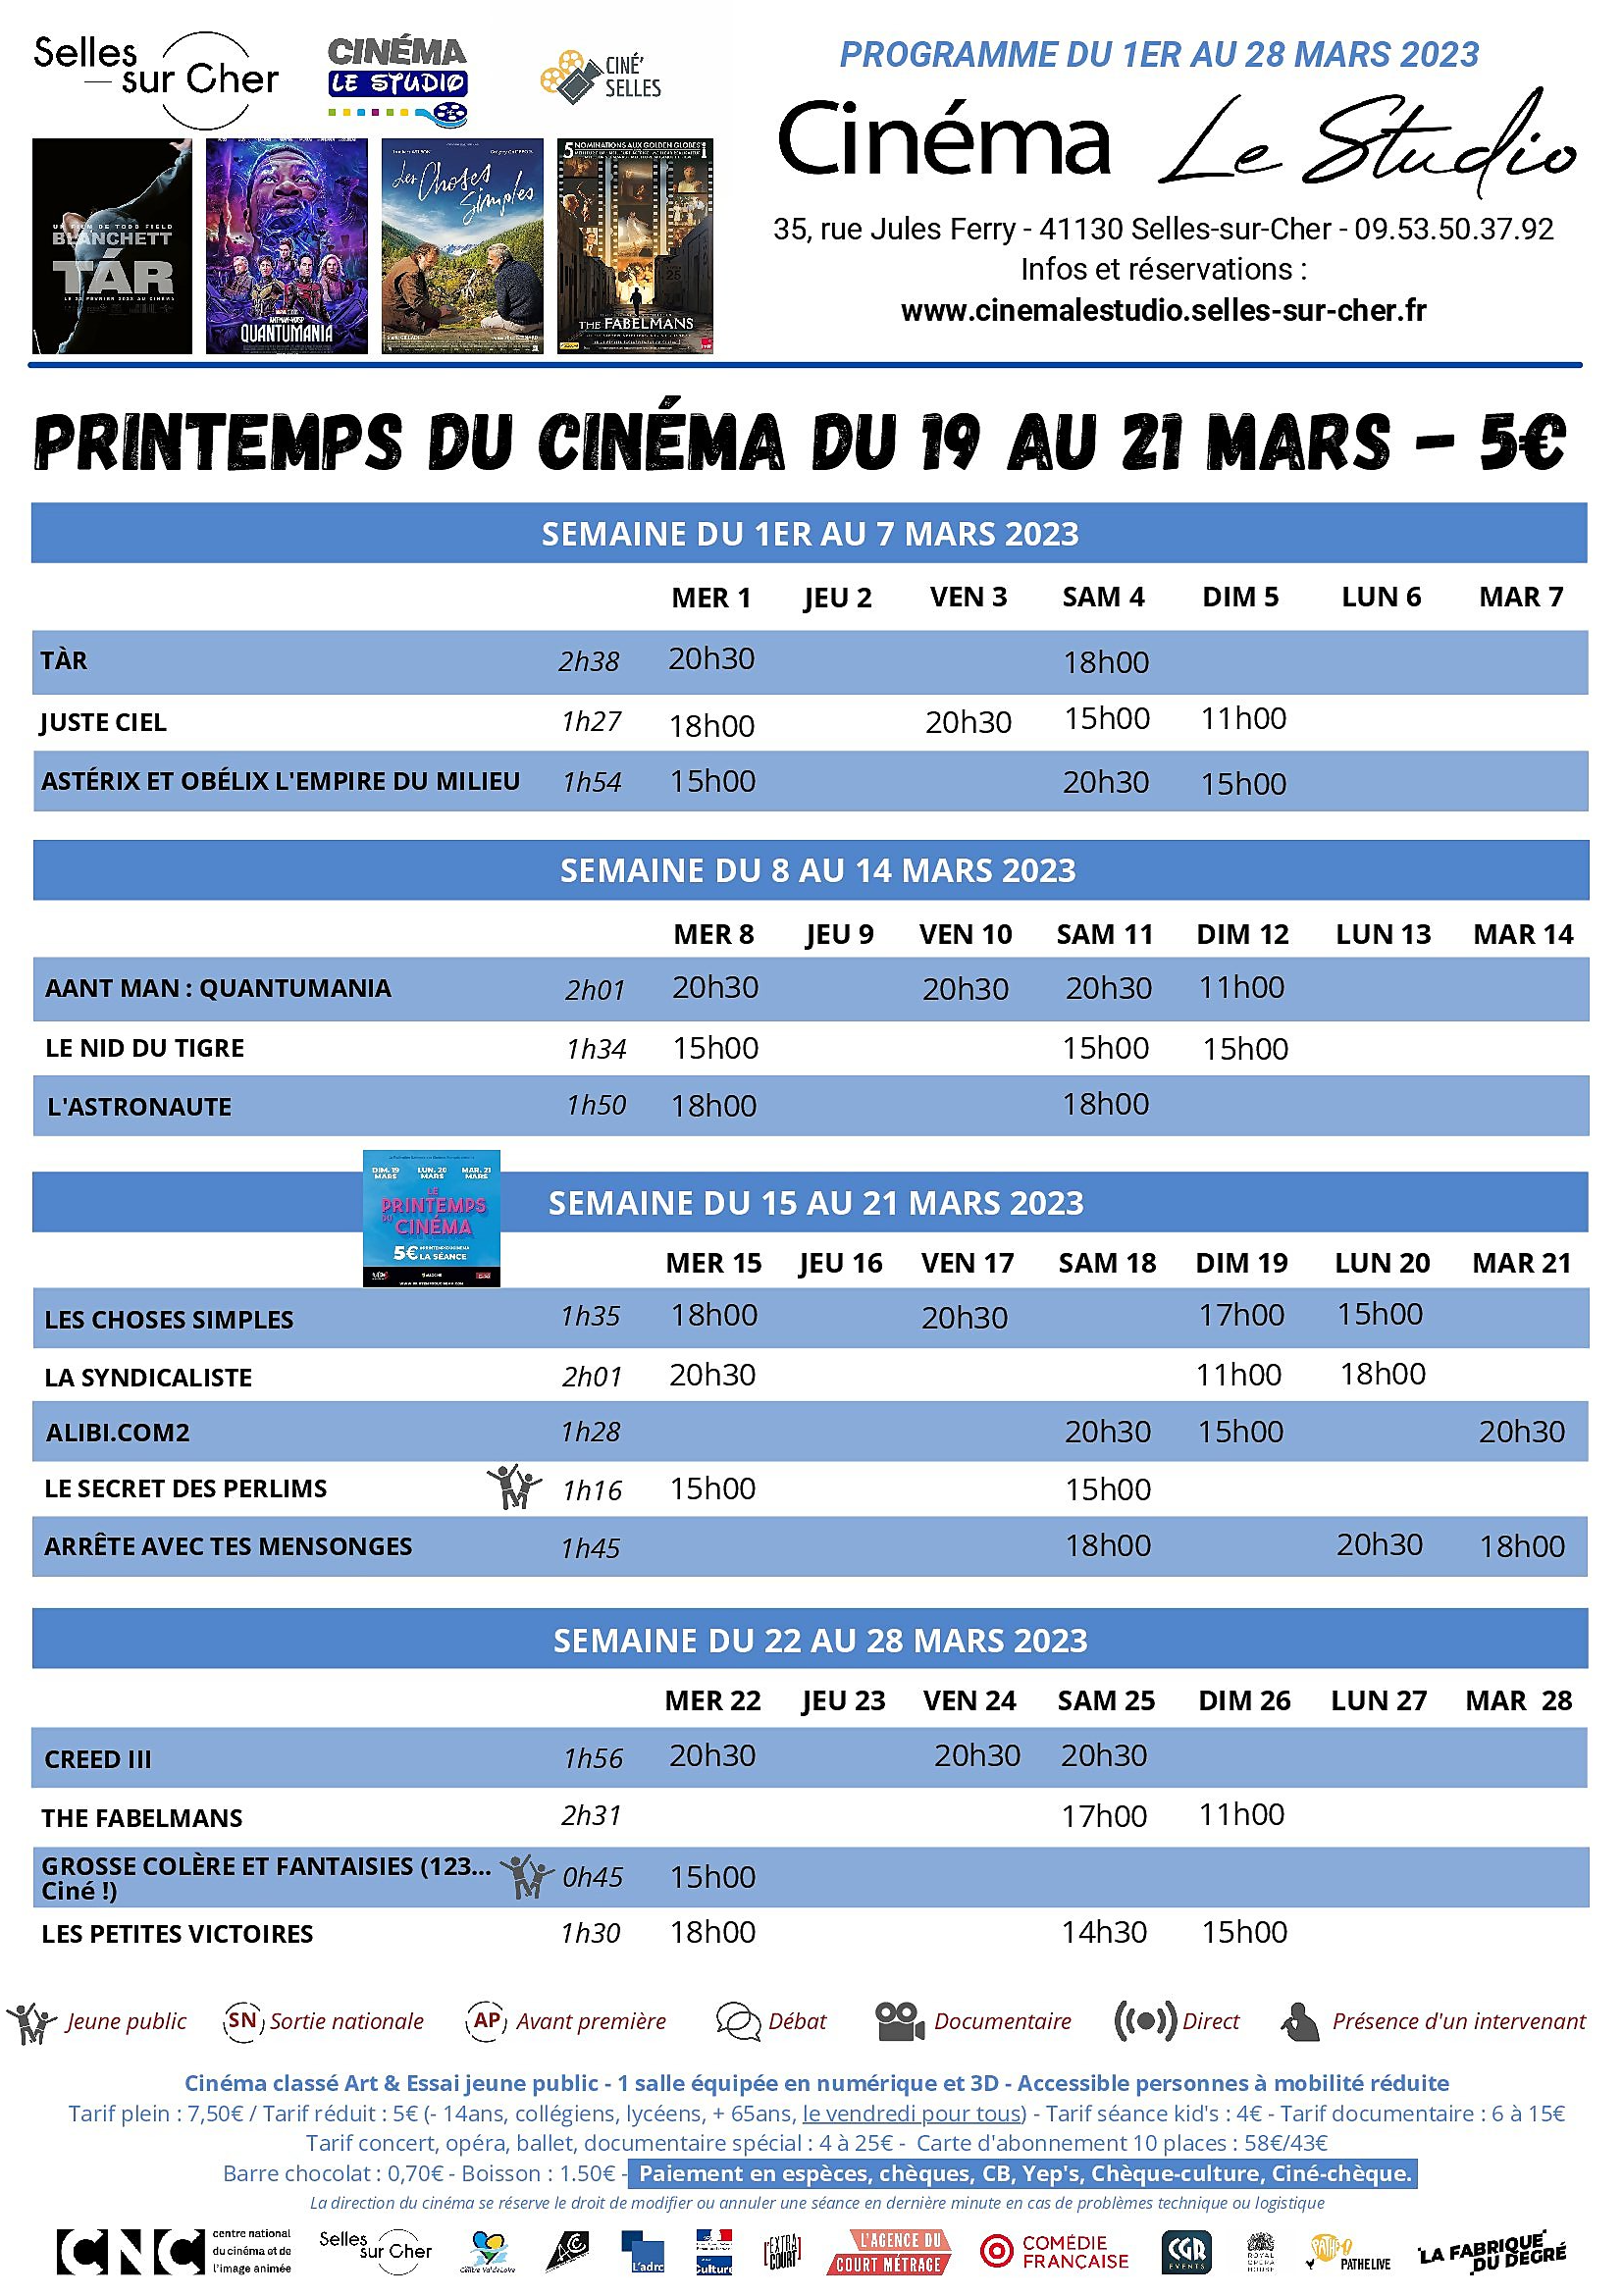 Cinéma Le Studio - Programme du mois